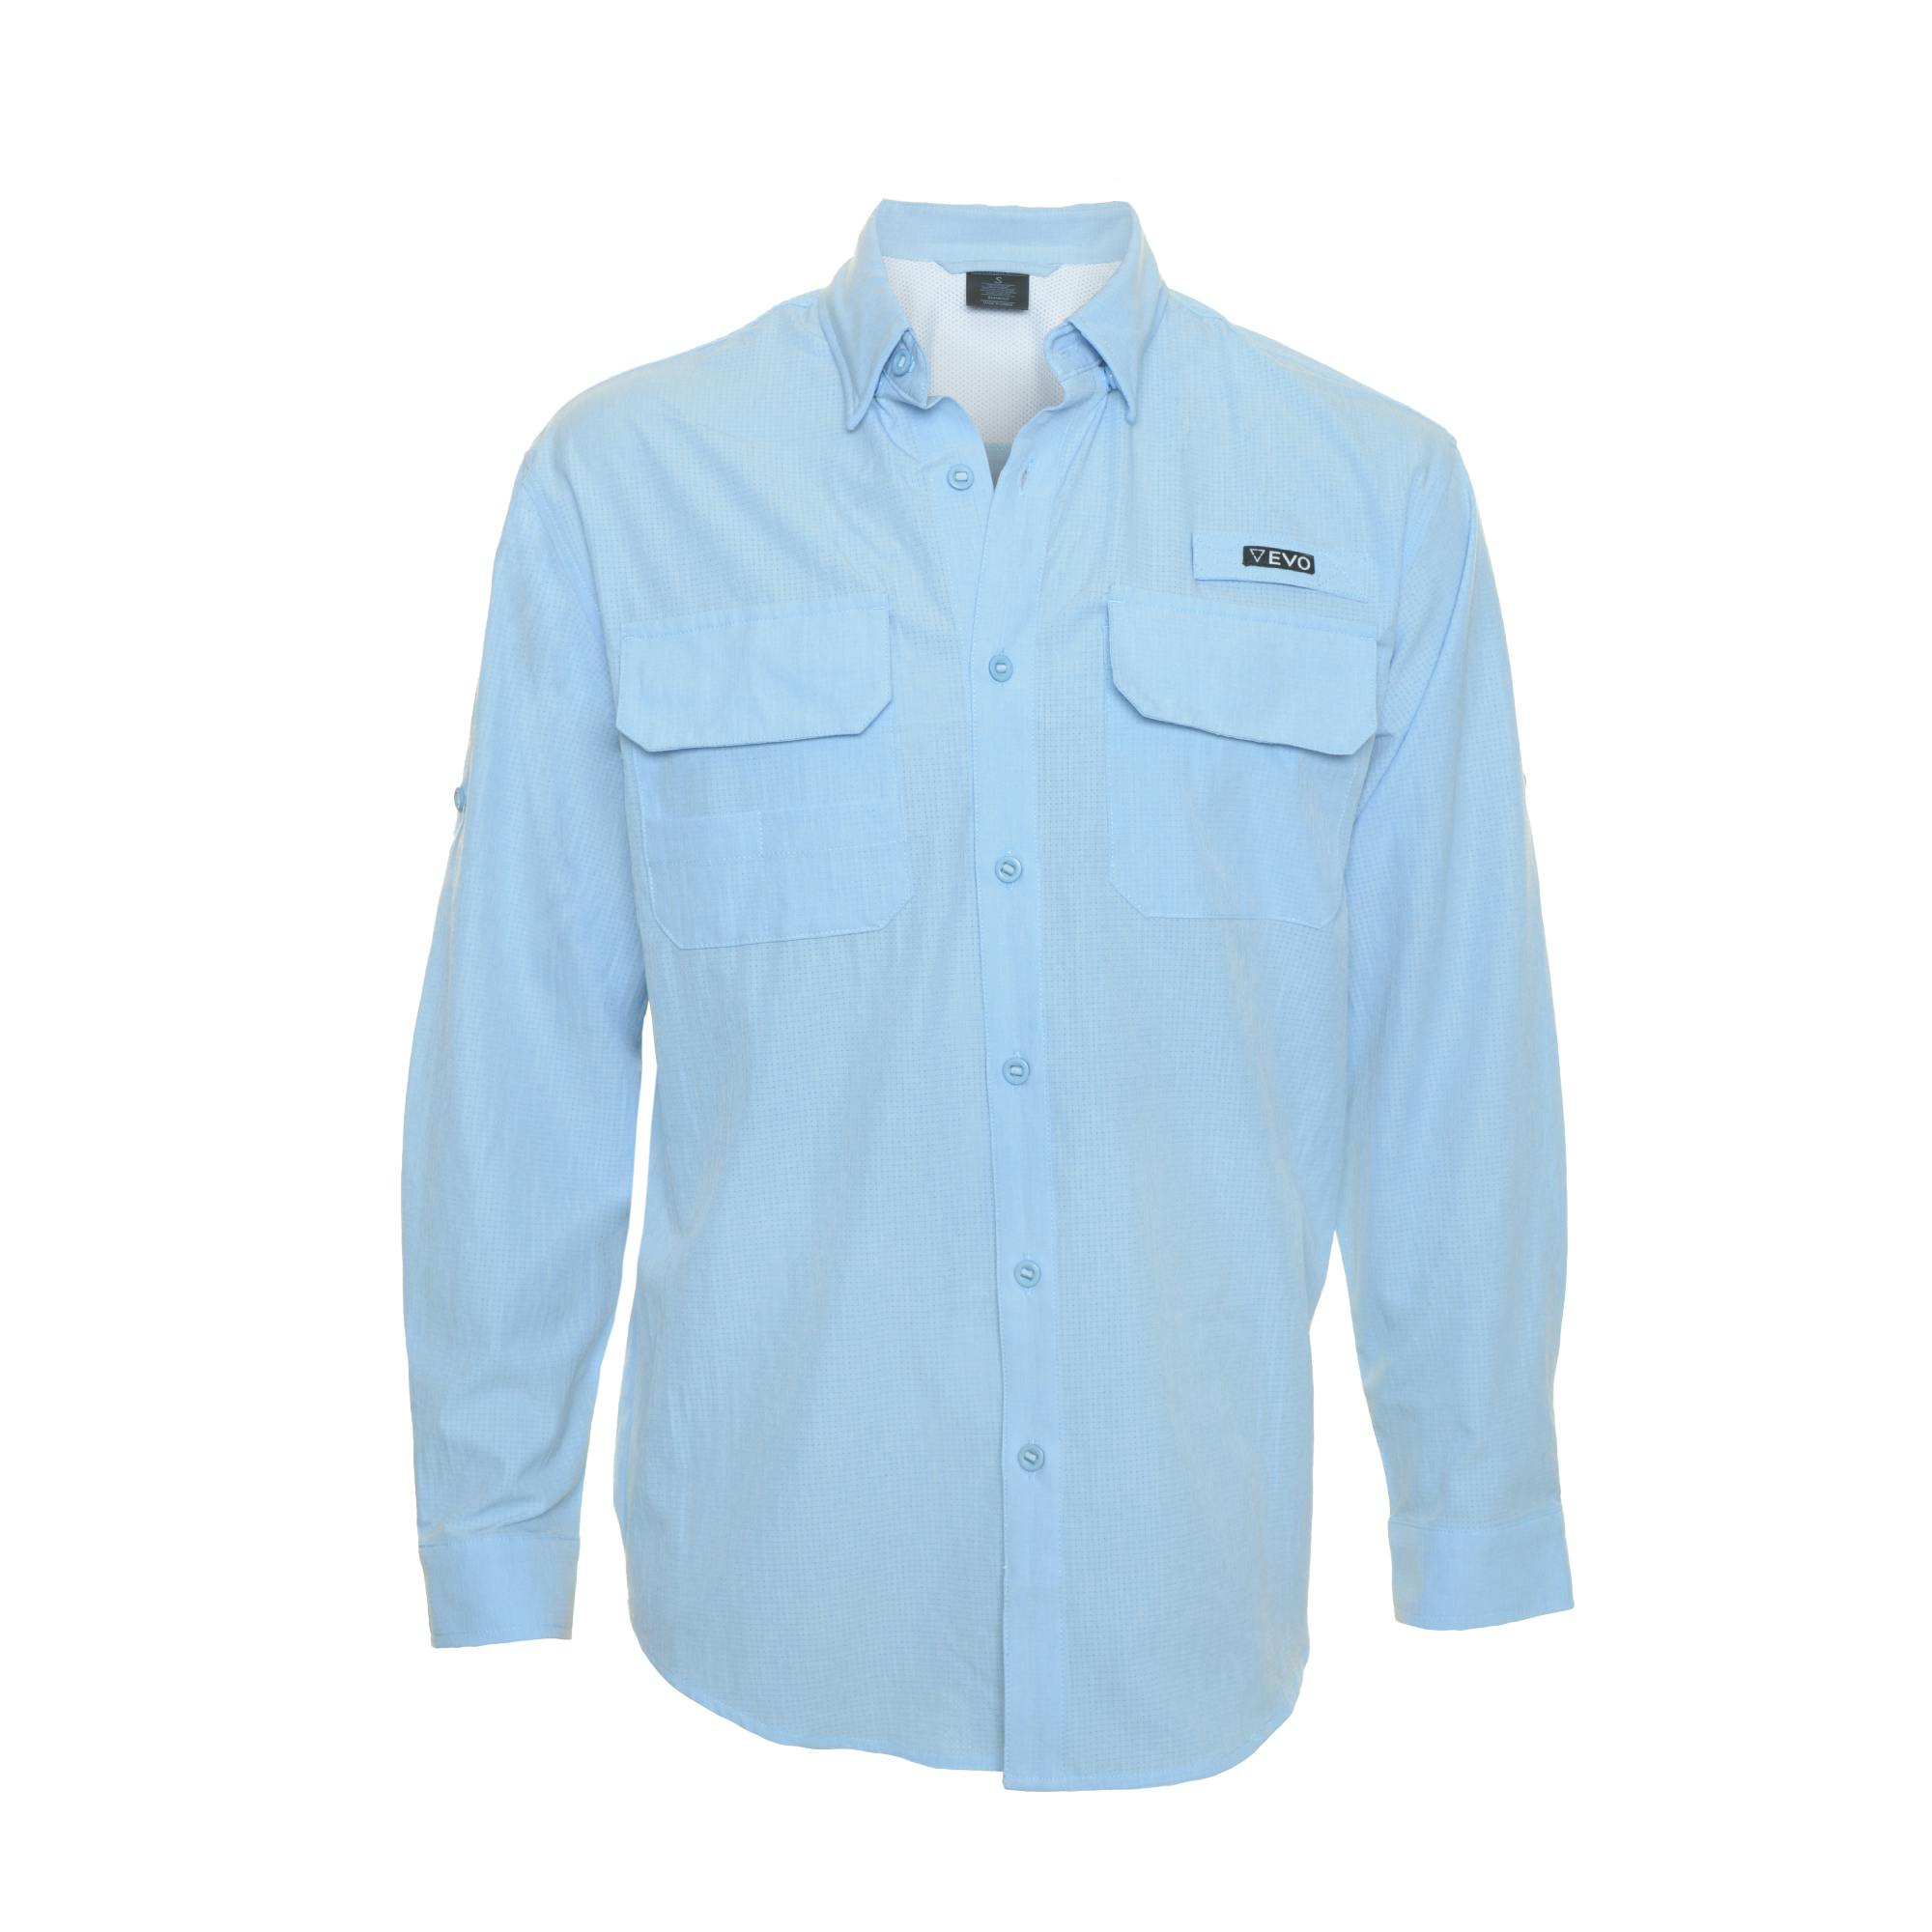 EVO Bimini Long Sleeve Woven Performance Shirt (Men’s) - Blue